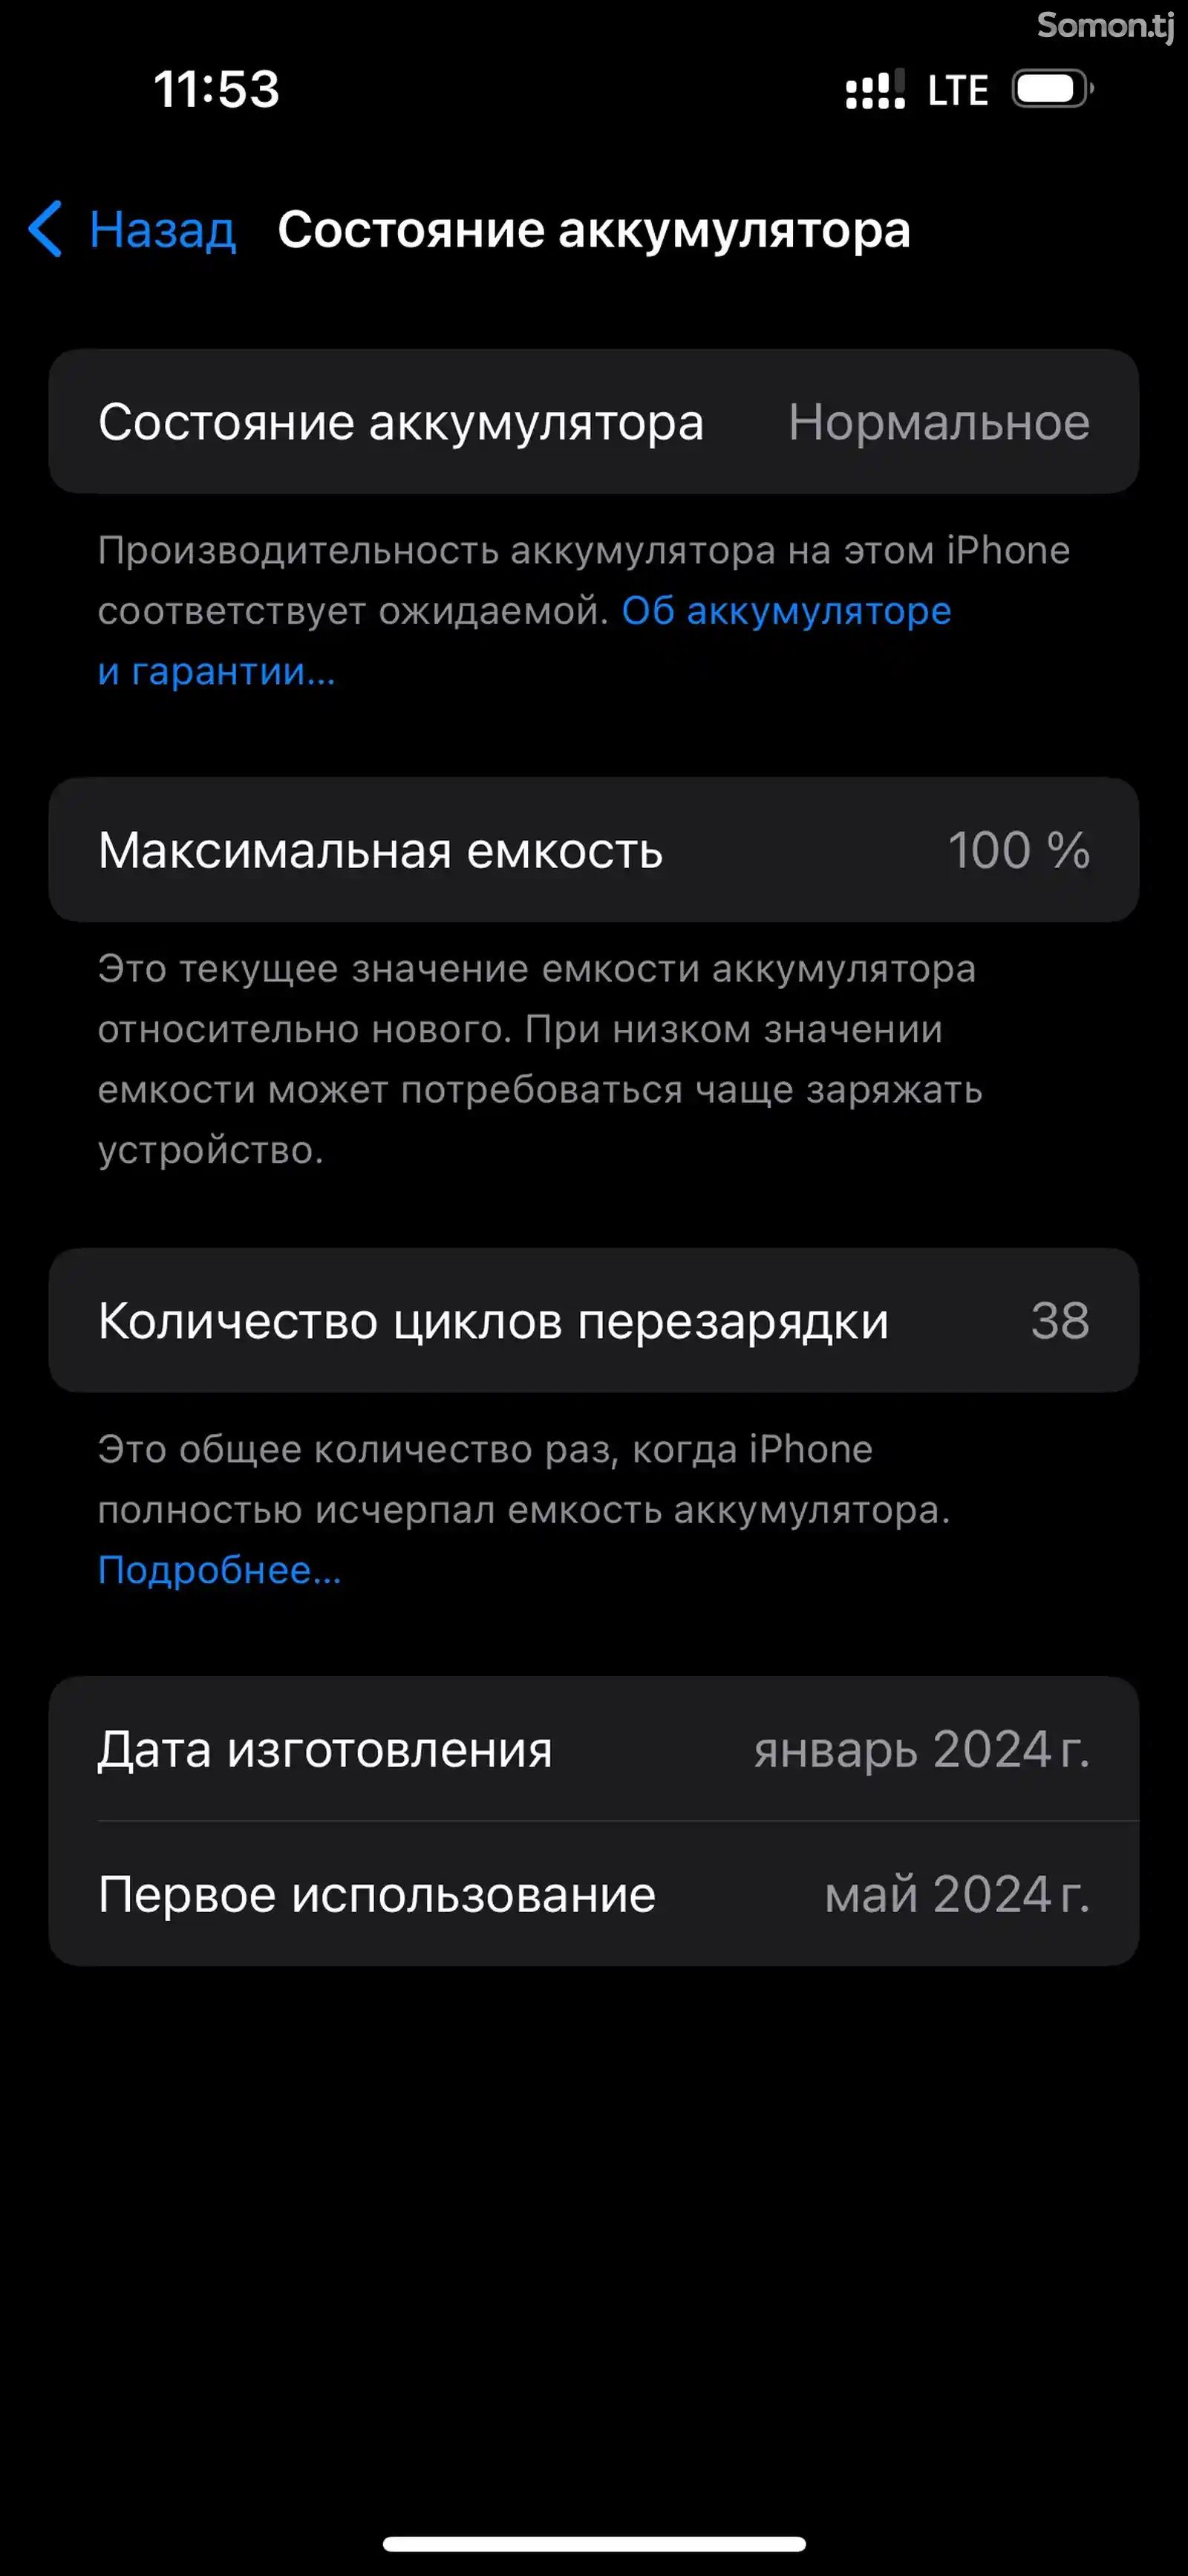 Apple iPhone 15 Pro, 128 gb, Black Titanium-6